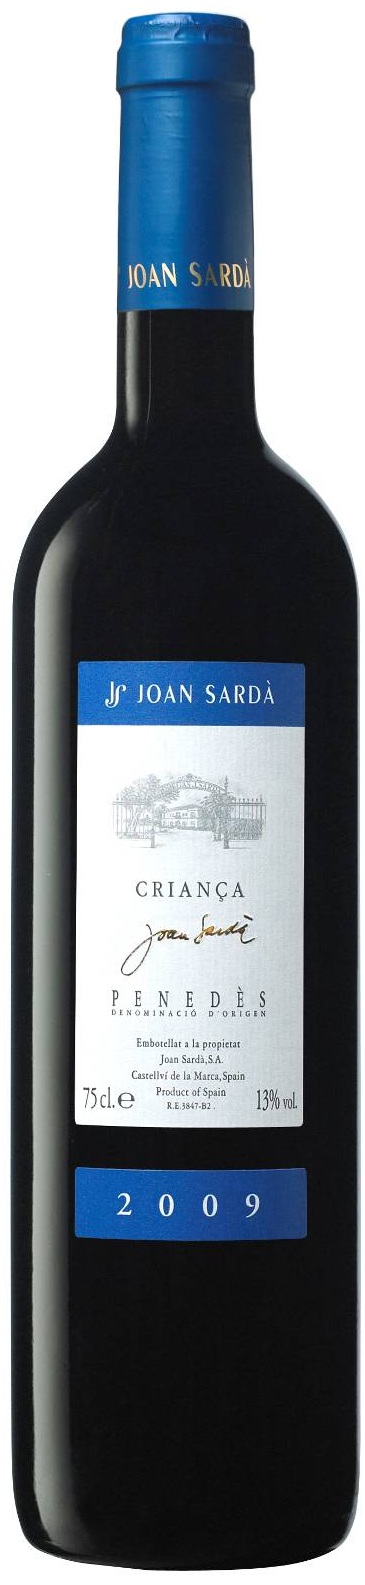 Bild von der Weinflasche Joan Sardà Criança